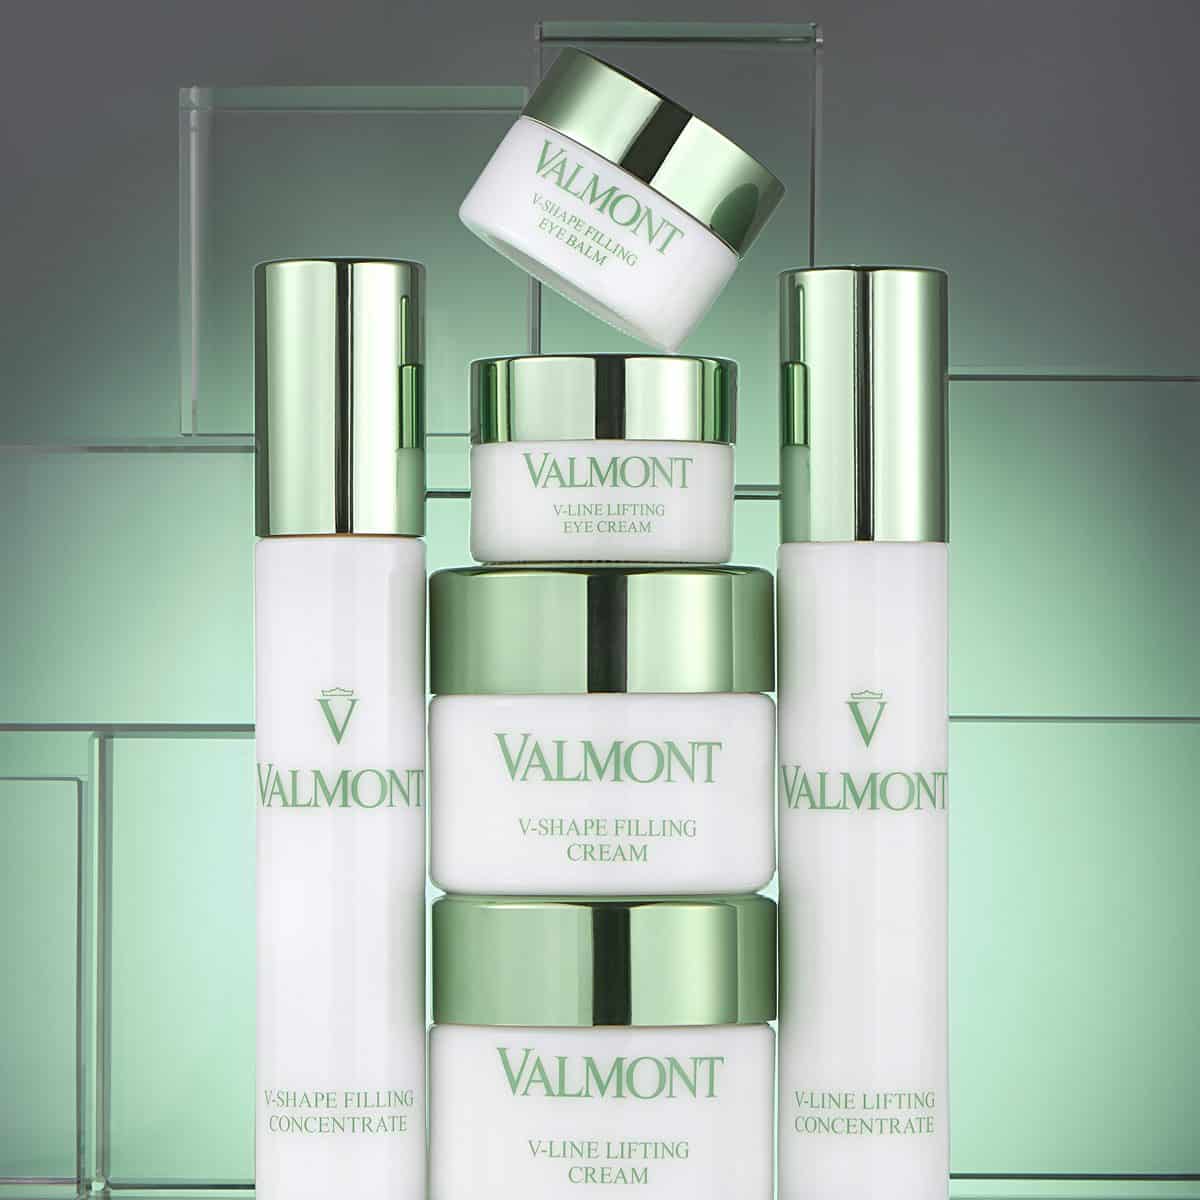 Puissance 5, la cosmétologie innovante de Valmont